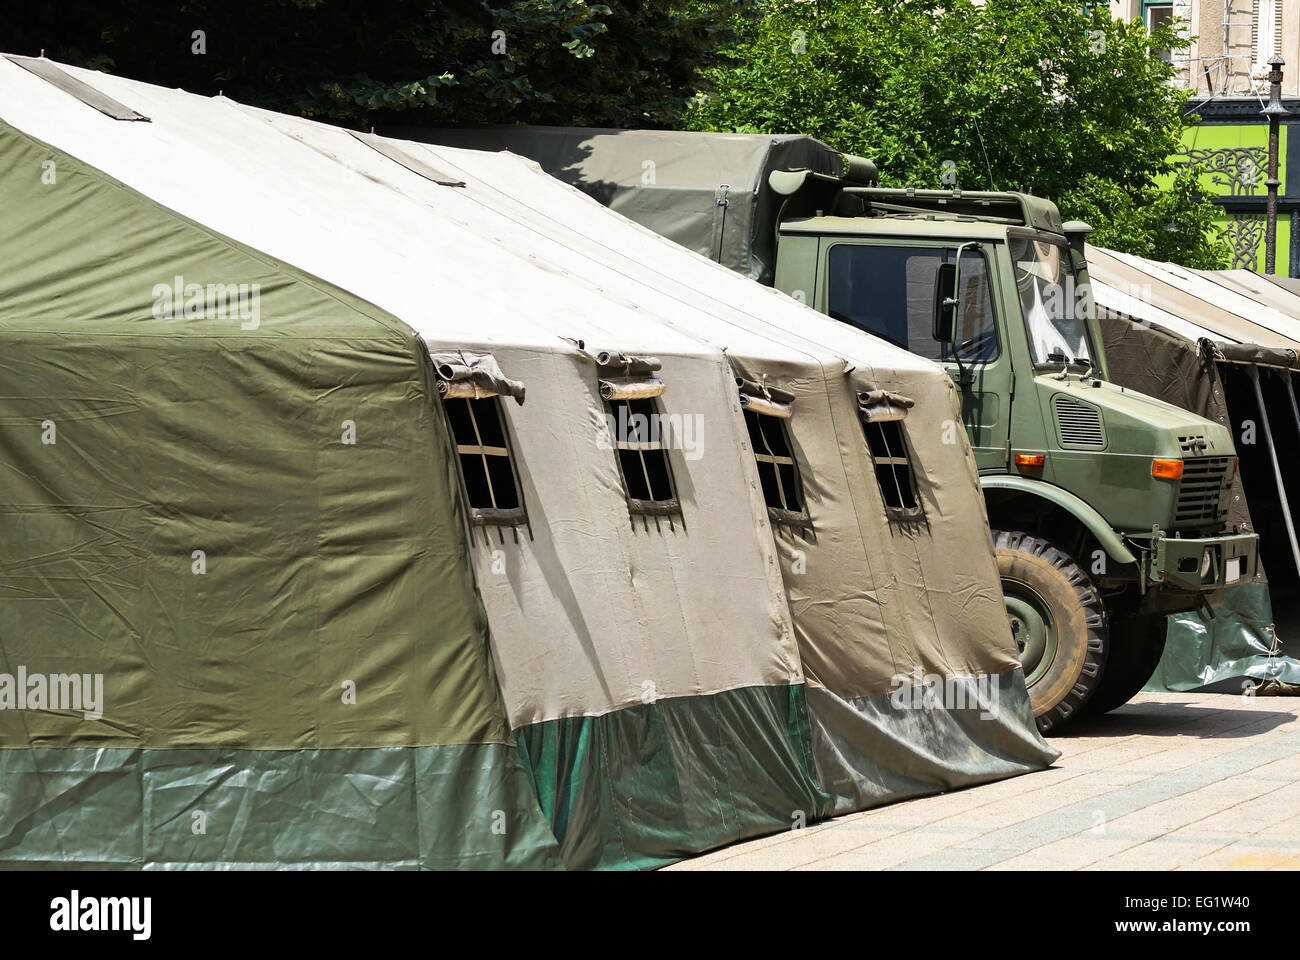 Grande tente militaire et camion militaire Banque D'Images